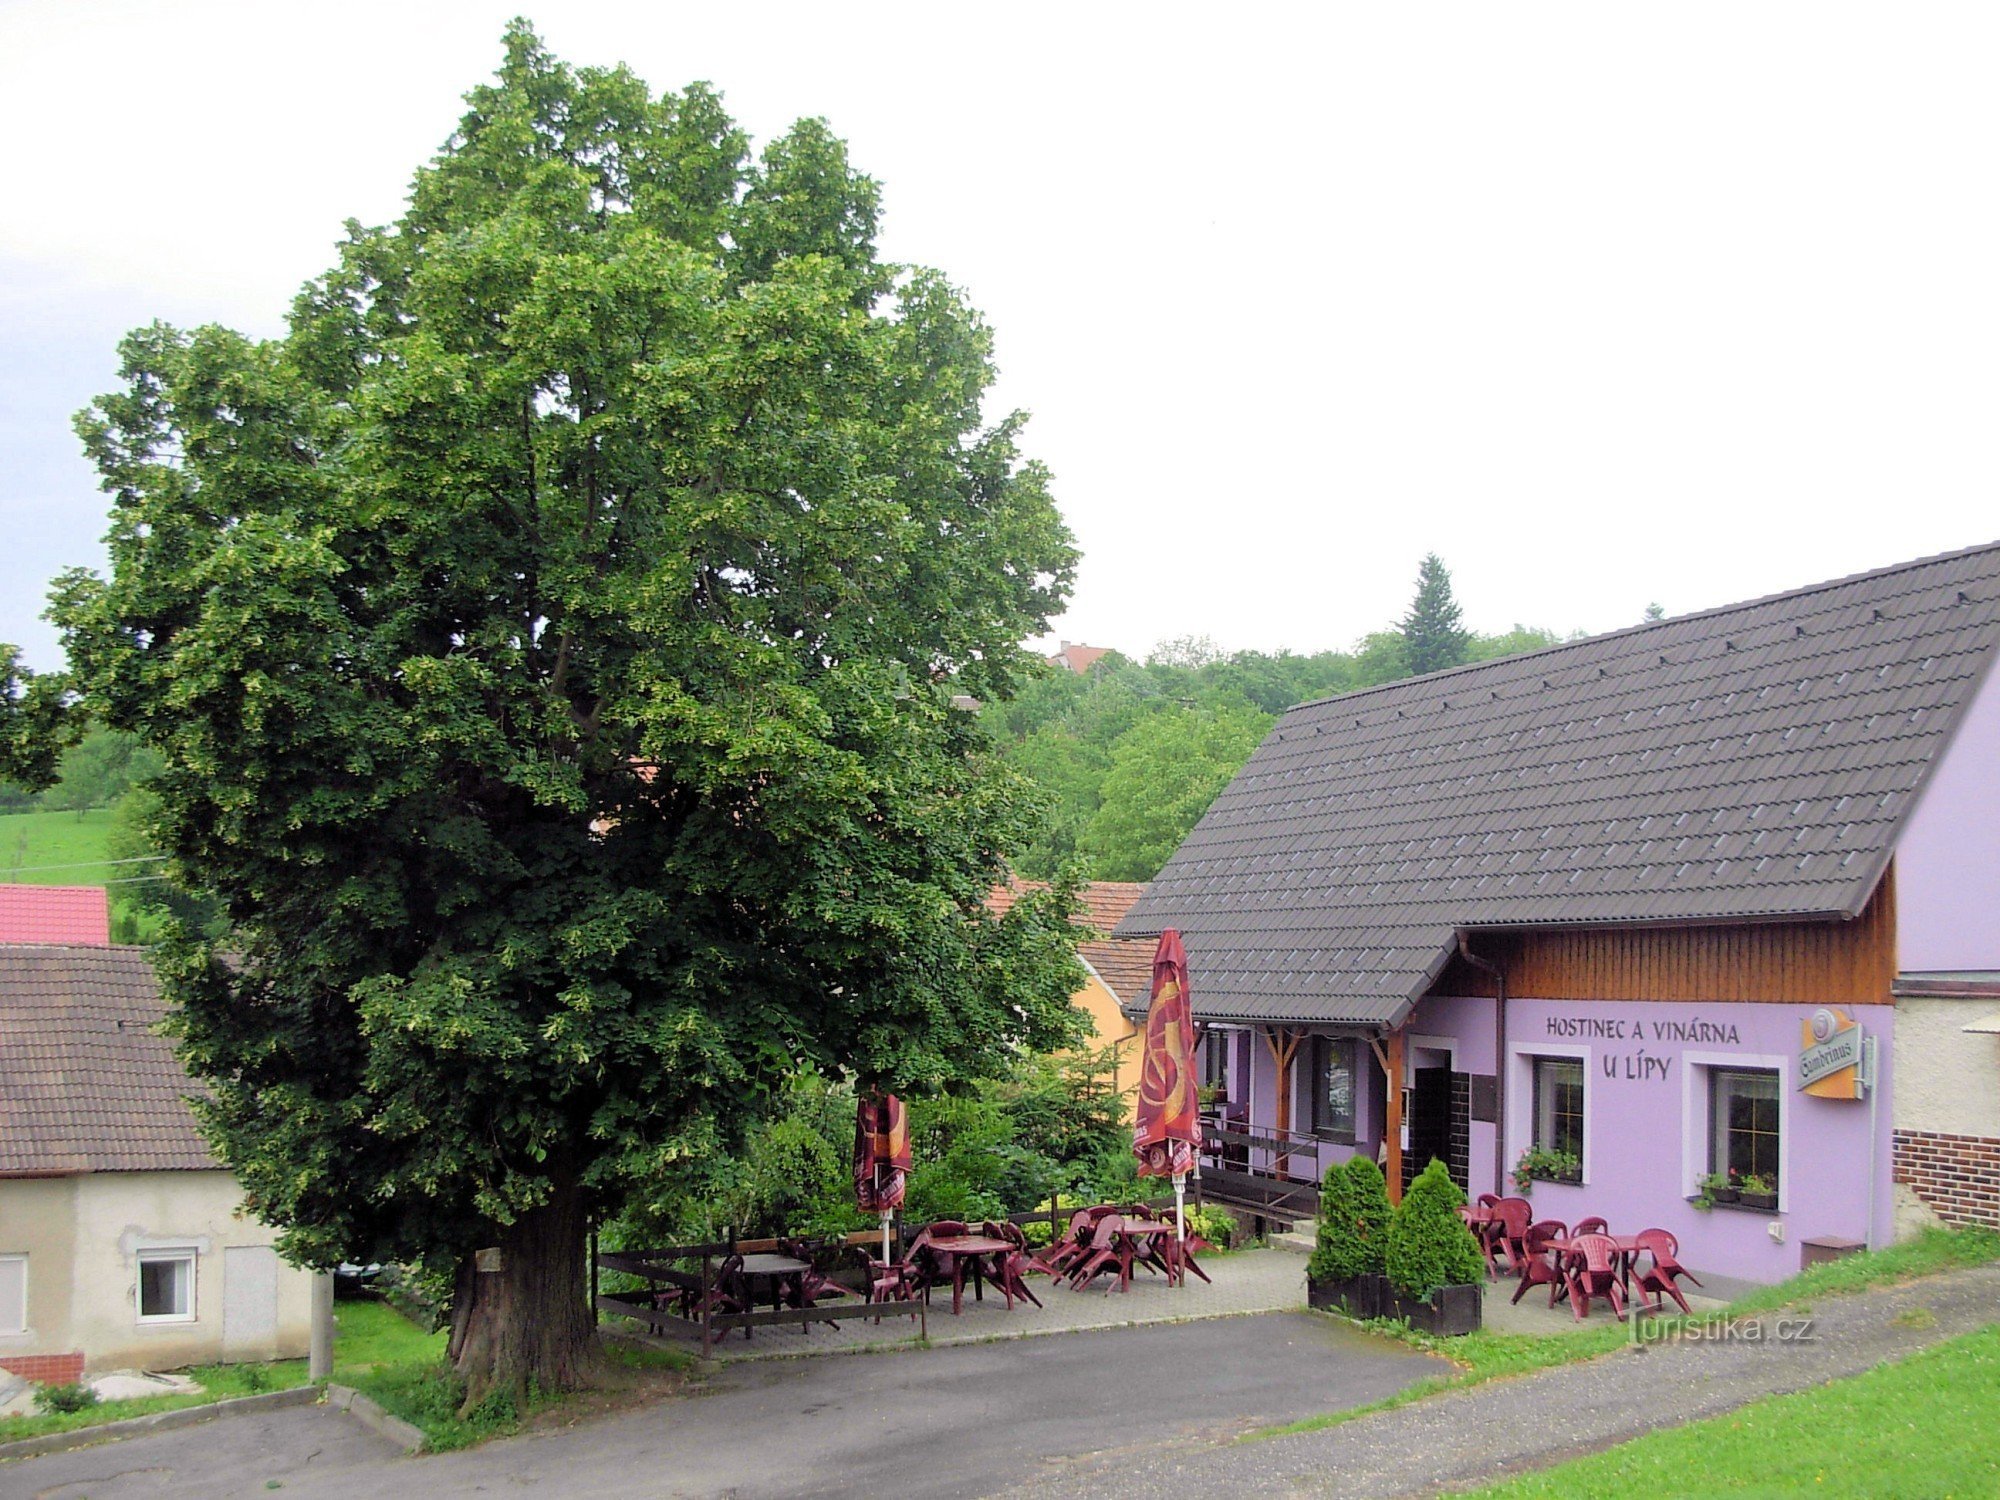 位于 Březová 的 U lípy 酒厂和旅馆